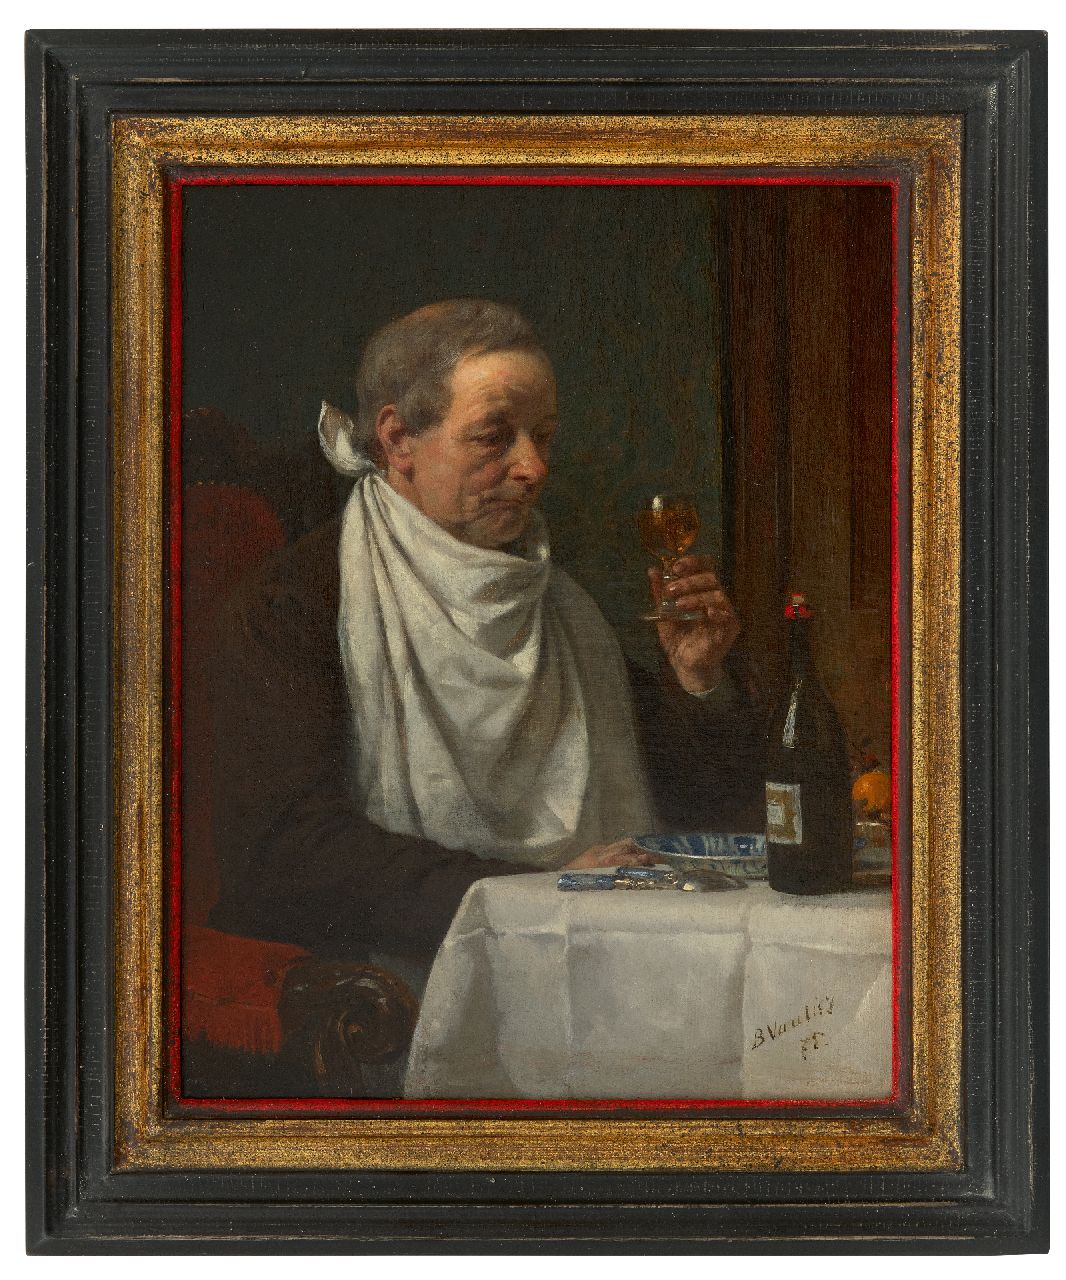 Vautier I M.L.B.  | Marc Louis 'Benjamin' Vautier I | Schilderijen te koop aangeboden | De epicurist, olieverf op doek 35,2 x 27,6 cm, gesigneerd rechtsonder en gedateerd '75